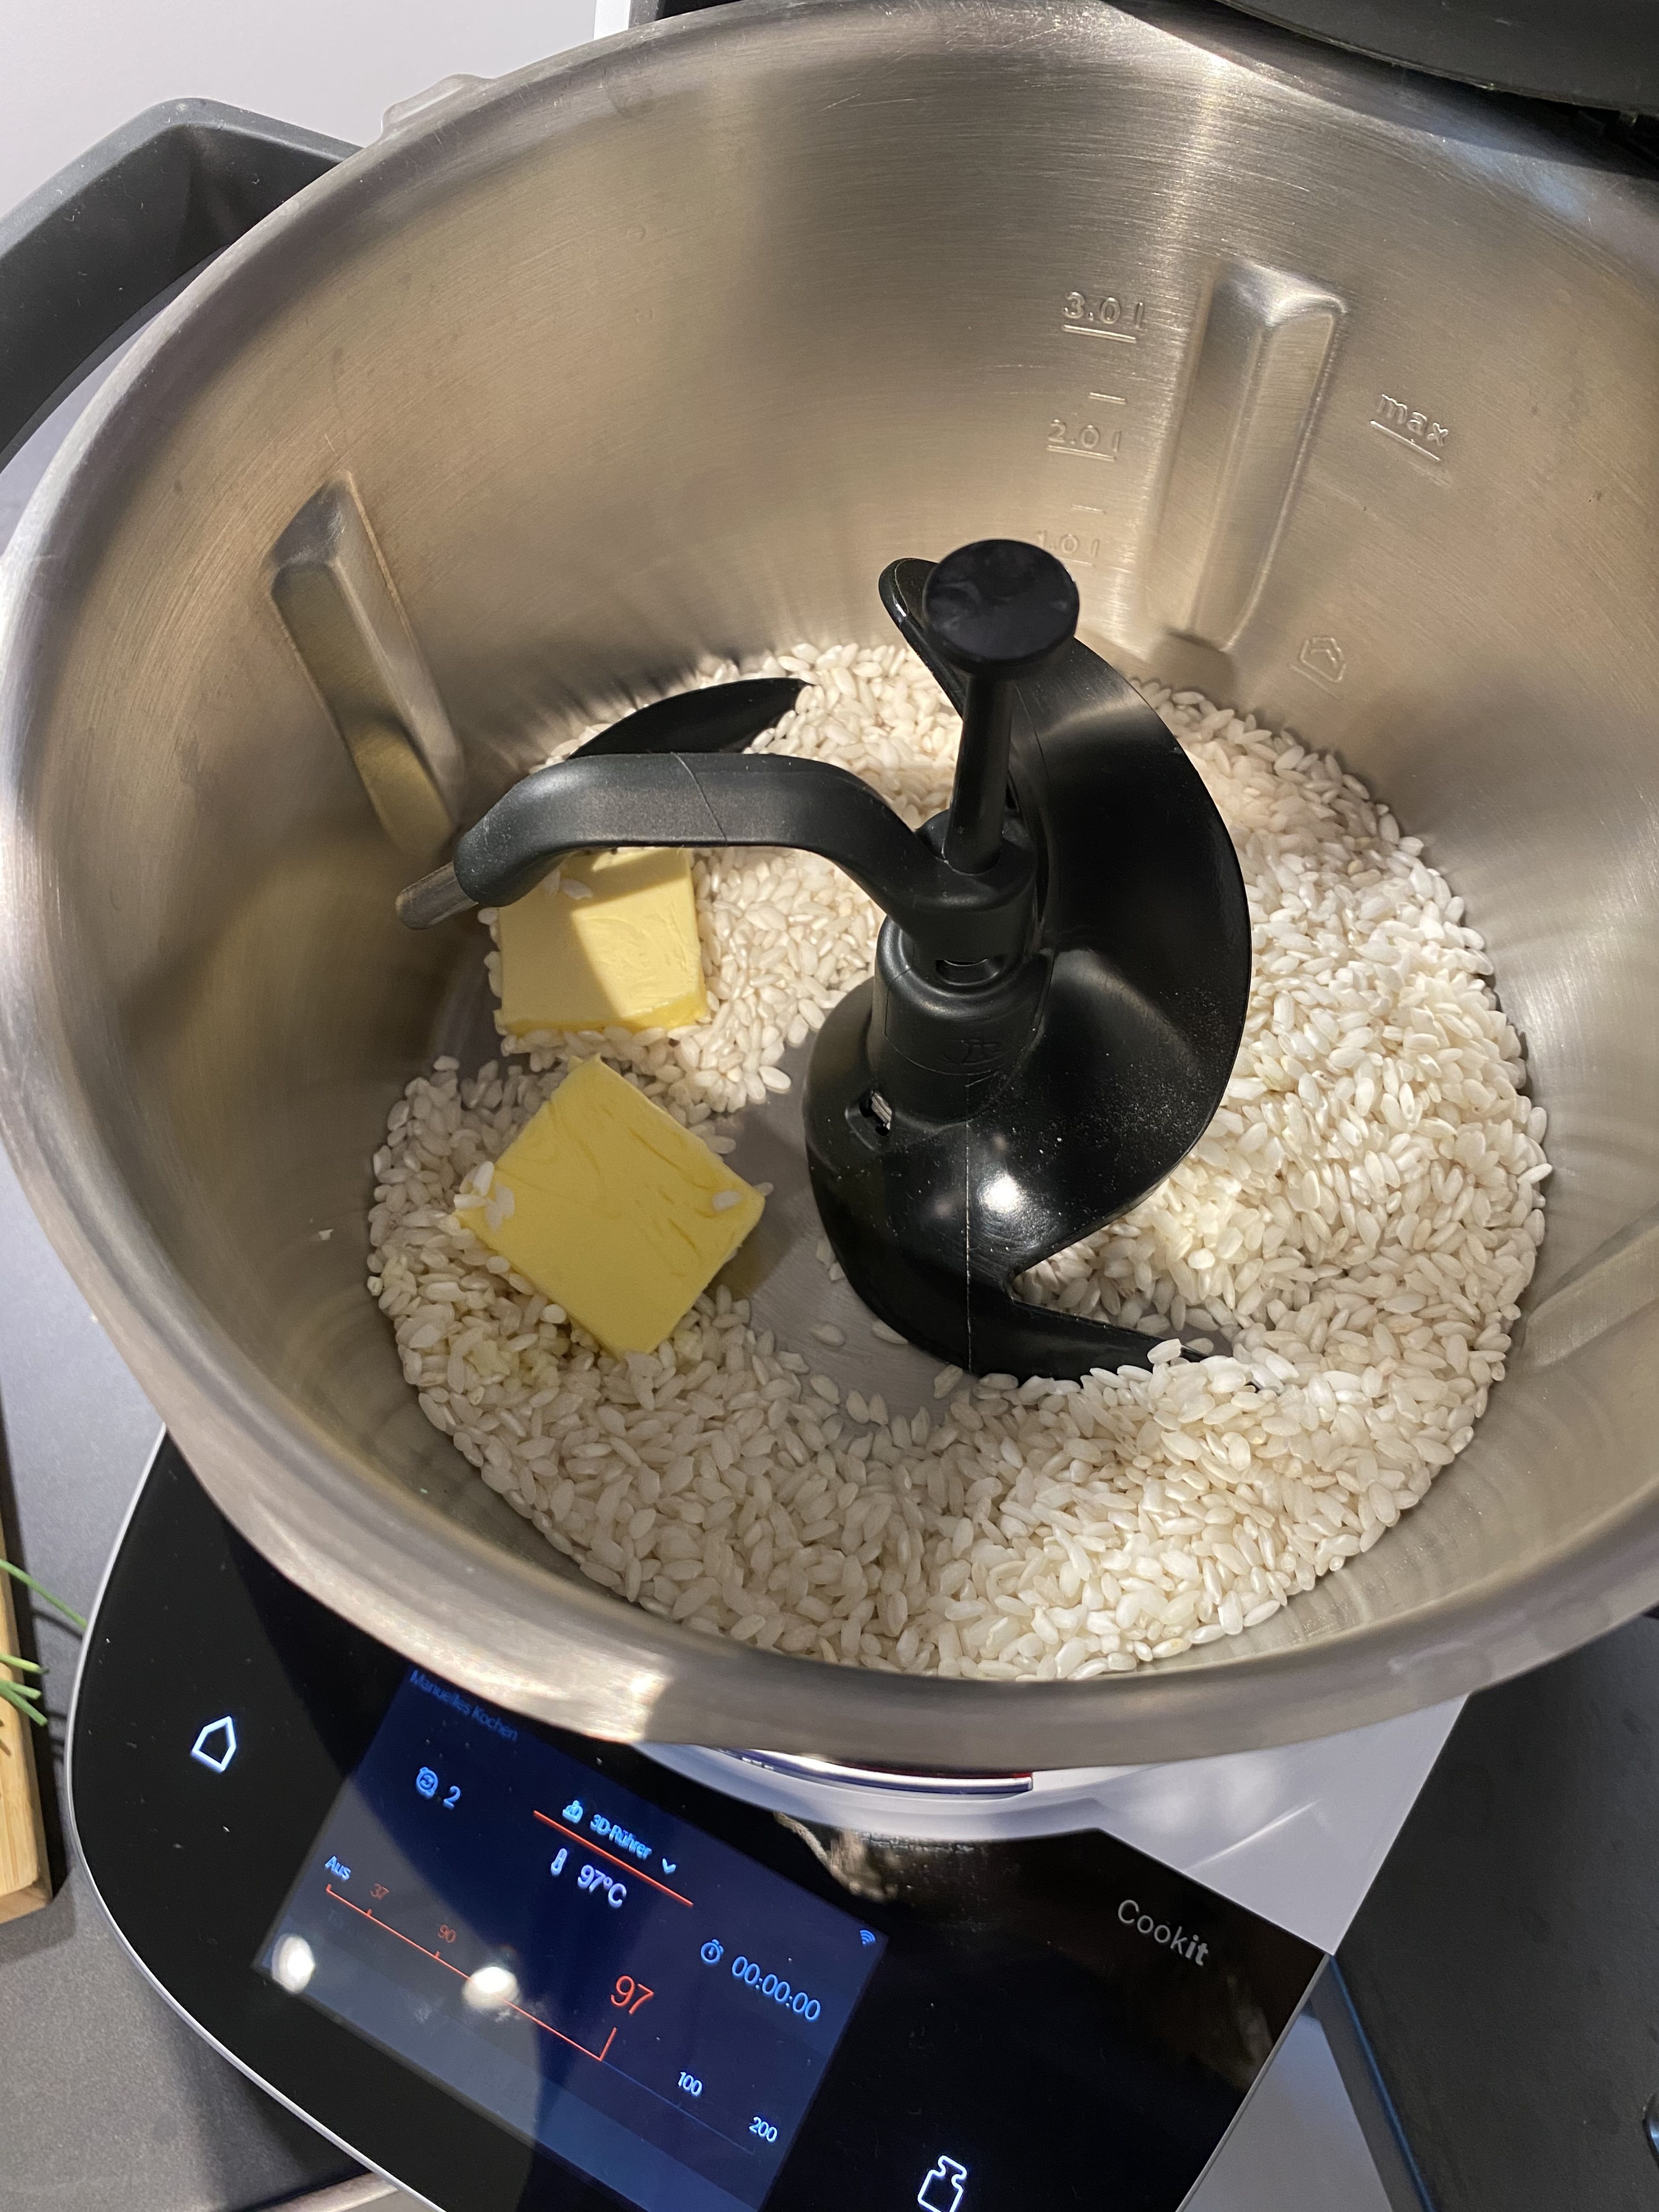 Das Cookit-Universalmesser in den Cookit einsetzten. 
Den Knoblauch und die Zwiebeln schälen, halbieren und in den Topf geben, den Deckel verschließen und zerkleinern (Universalmesser l Stufe 14 l 8 Sek.).
Anschließend das Universalmesser entfernen, den 3D-Rührer einsetzen, die Butter und den Risottoreis zufügen und alles anbraten (3D-Rührer l Stufe 3 l 110°C l 10 Min.).